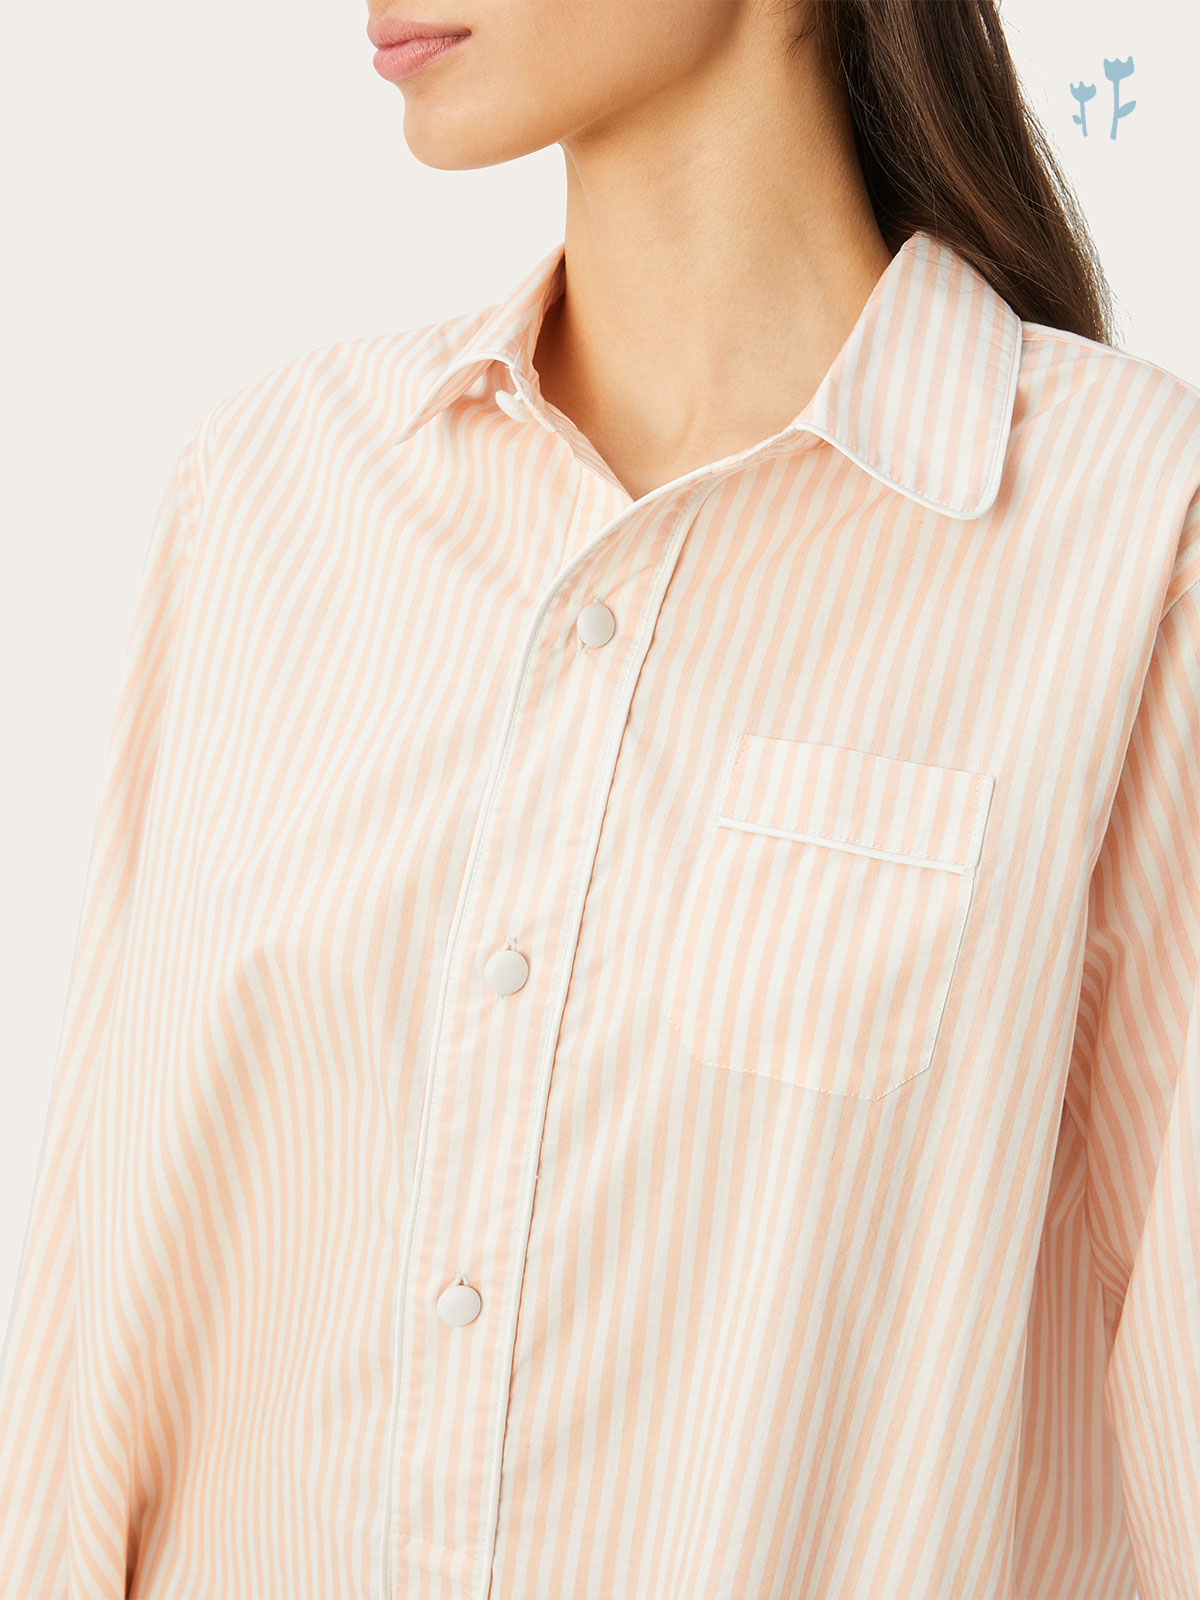 Linnet Night Shirt in Petal Stripe By Morgan Lane